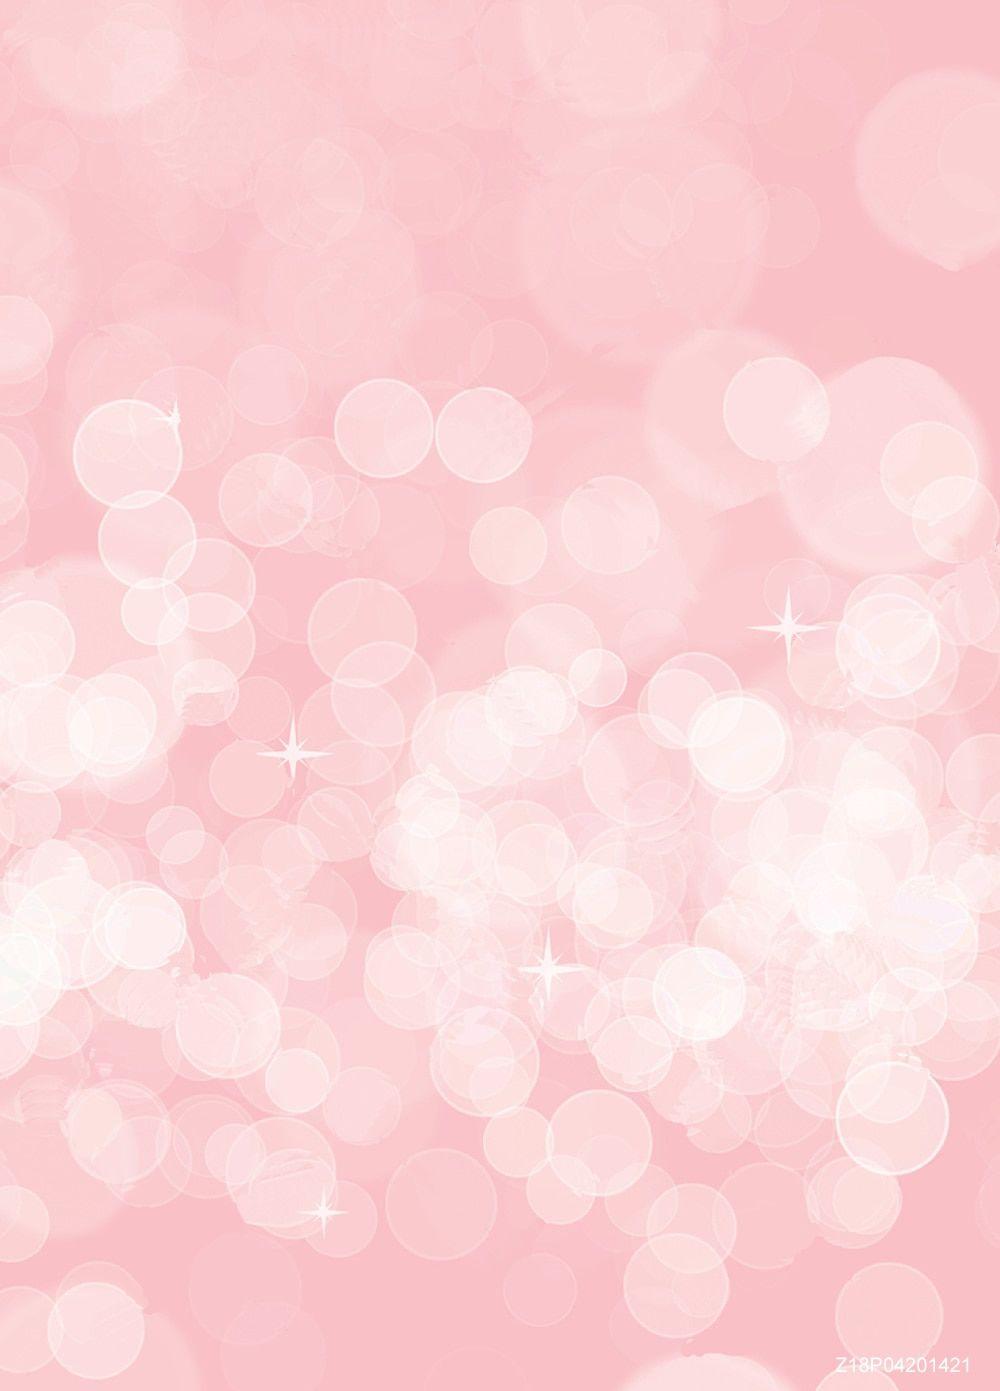 Hình nền màu hồng nhạt cho bé: Hình nền màu hồng nhạt này sẽ là món quà tuyệt vời dành cho bé yêu của bạn. Với thiết kế đơn giản nhưng vô cùng đáng yêu và ấm áp, hình nền này sẽ giúp bé yêu của bạn tận hưởng những giây phút thư giãn và ngủ ngon hơn. Hãy cho bé yêu của bạn những trải nghiệm tuyệt vời nhất với hình nền màu hồng nhạt này nhé!